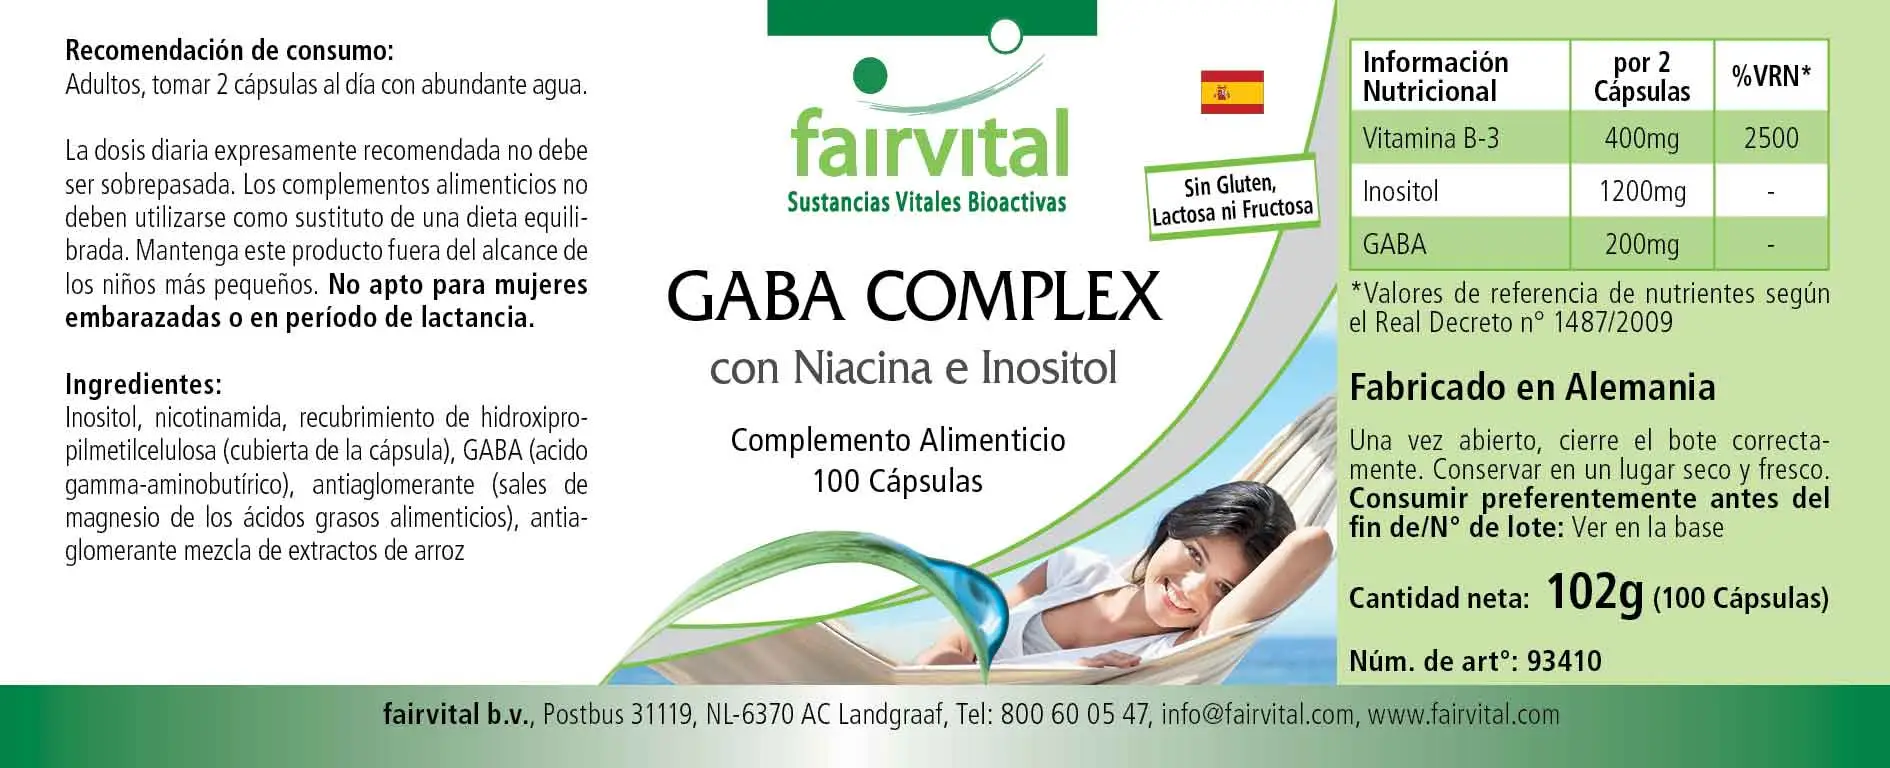 Complesso di GABA con niacina e inositolo – 100 capsule